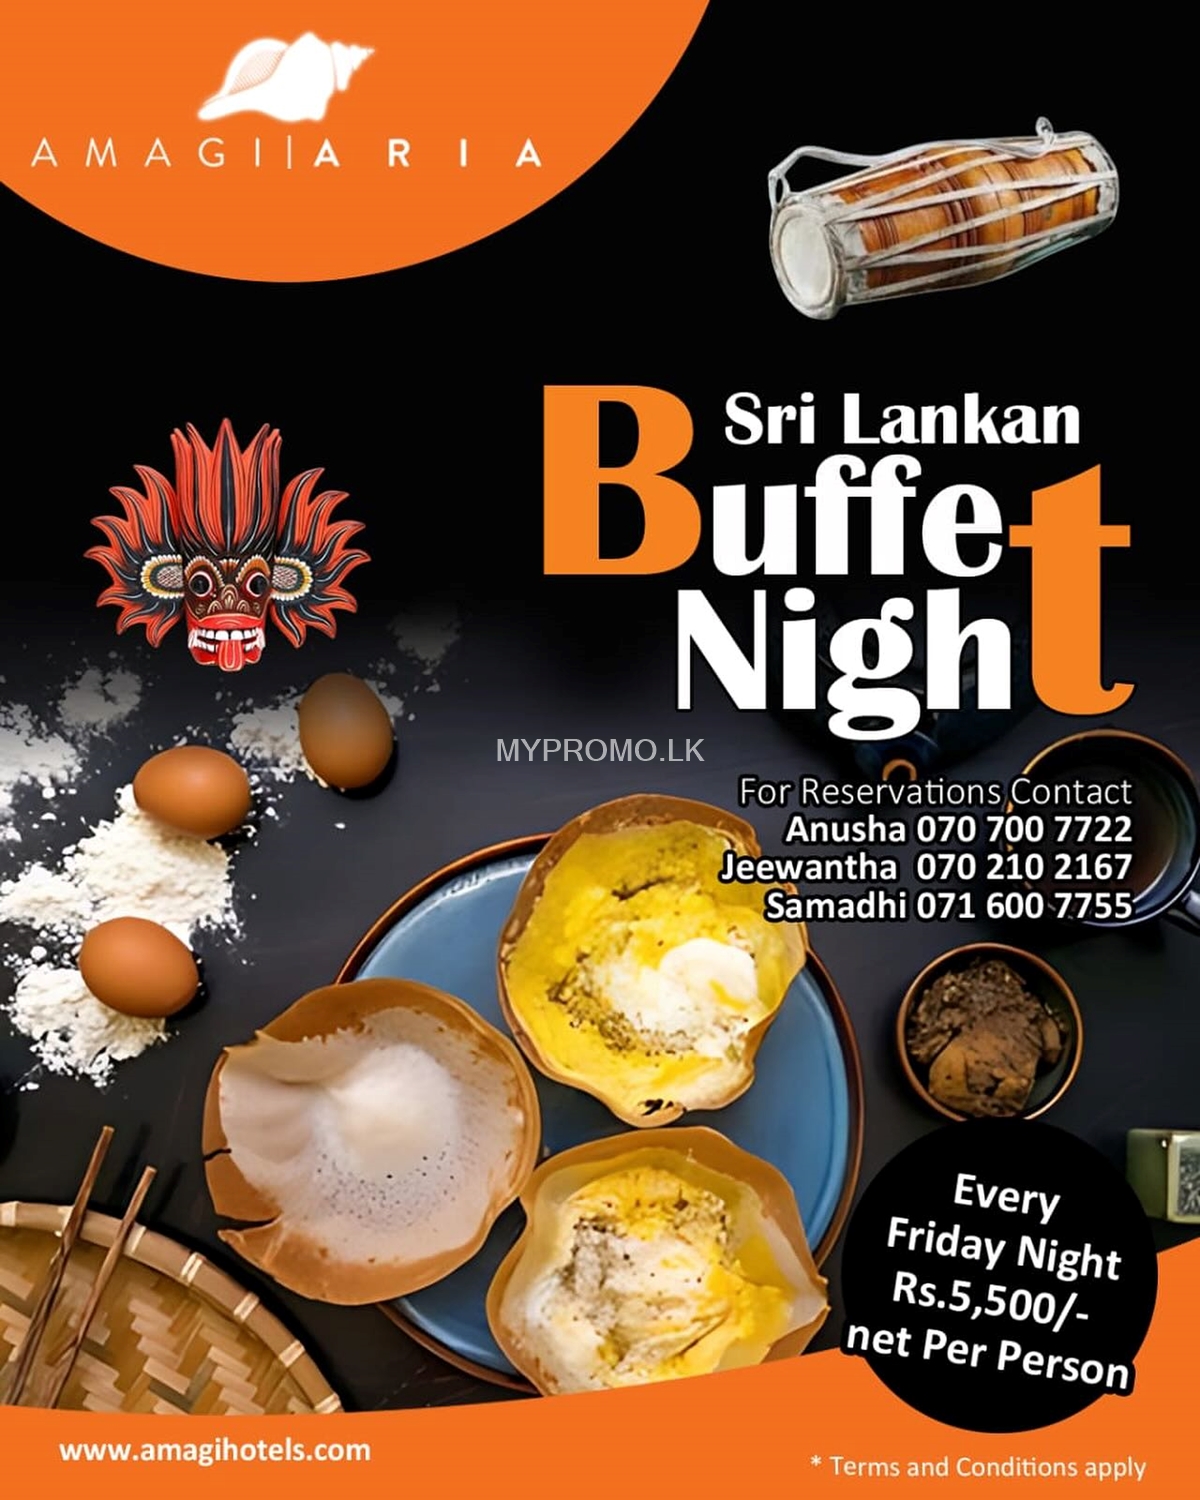 Sri Lankan Buffet Night at Amagi Aria